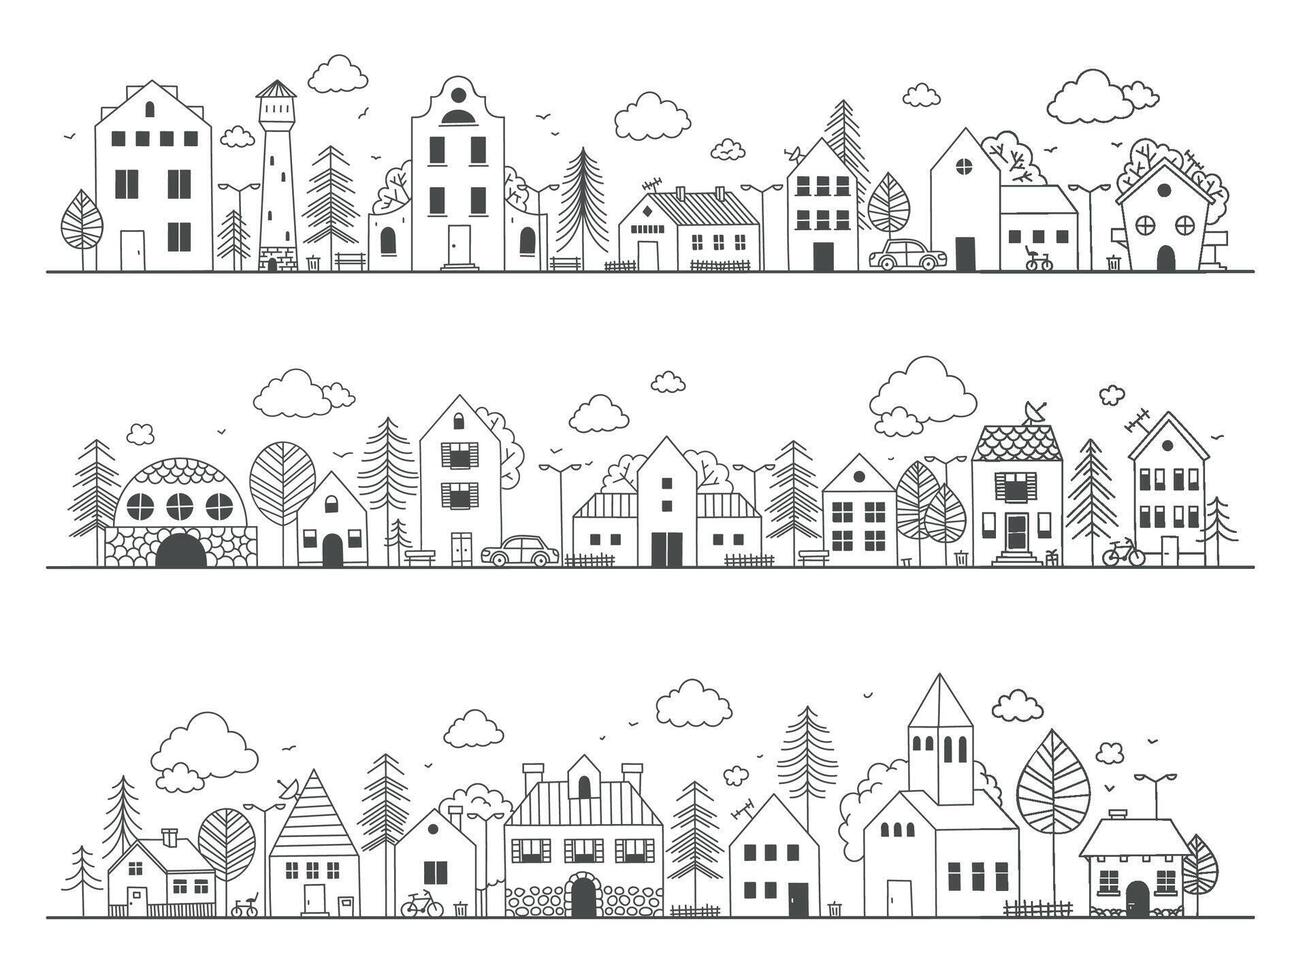 garabatear pueblo calle. linda rural edificios con árboles, mano dibujado país barrio bosquejo con pequeño casas vector infantil escena